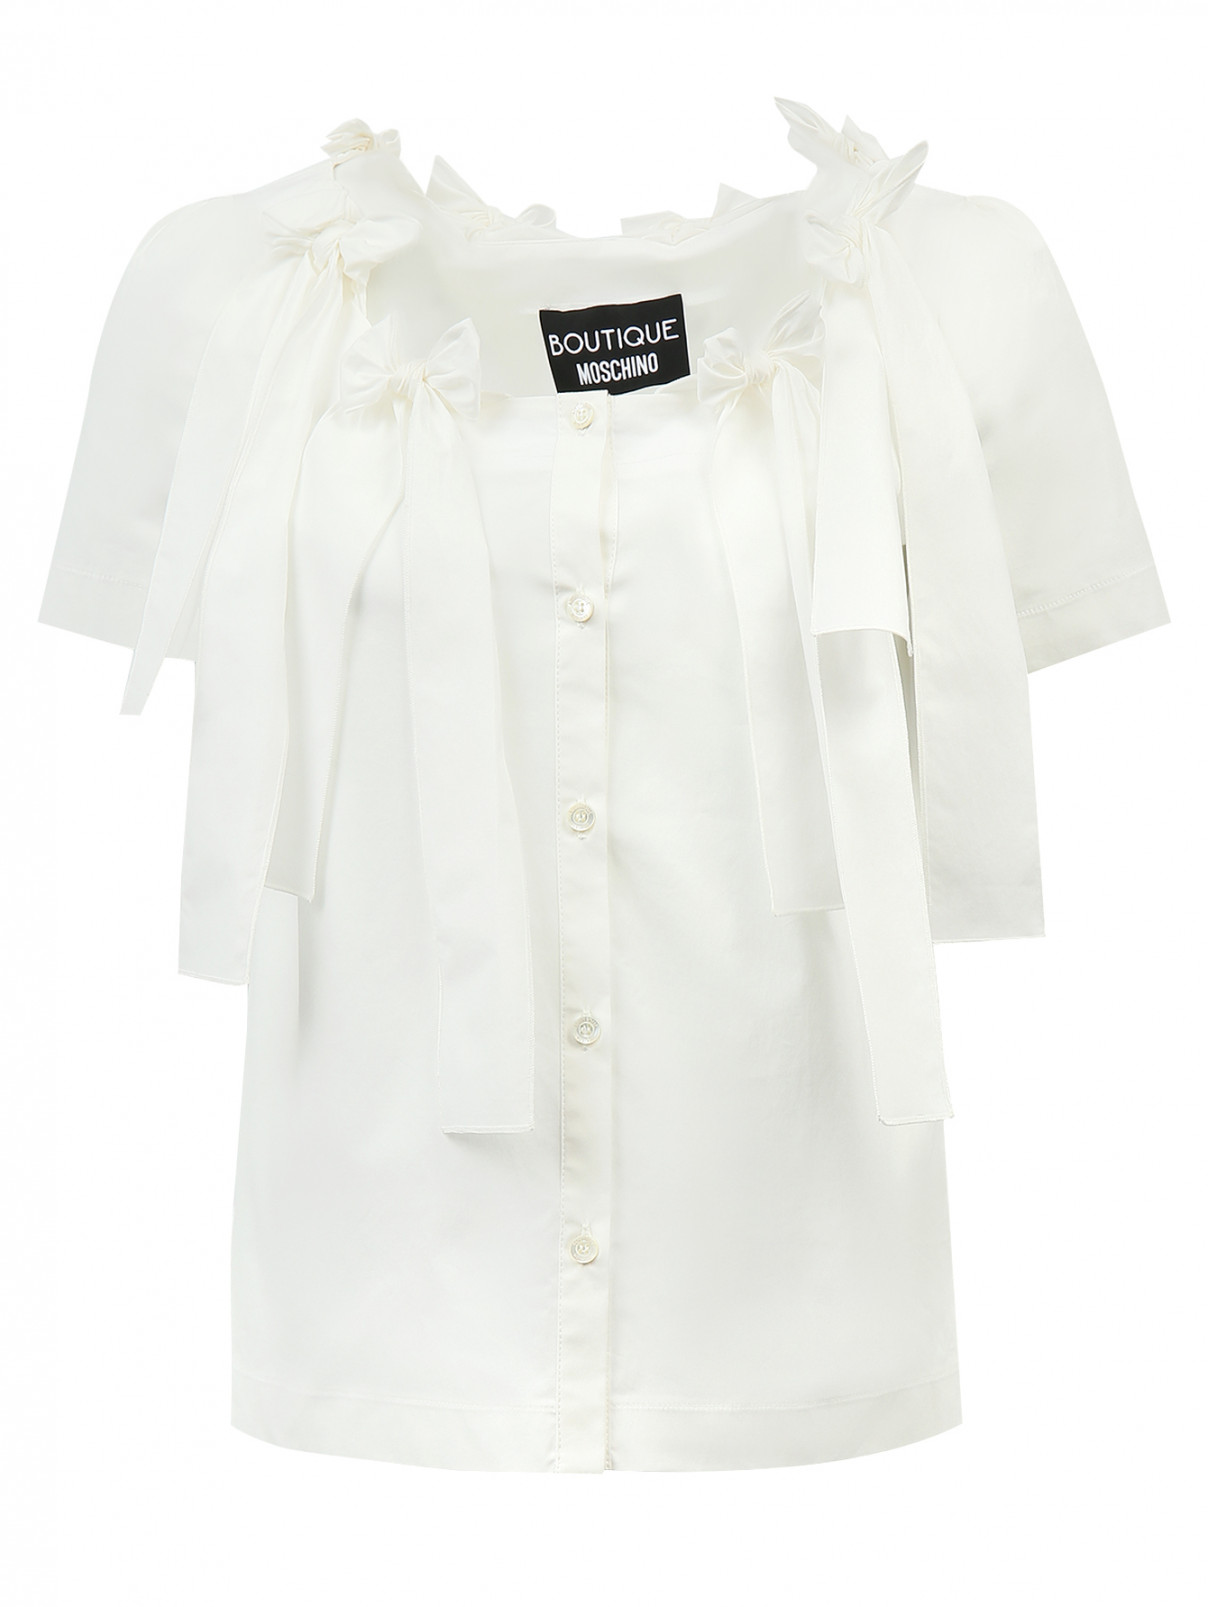 Блуза из хлопка на пуговицах декорированная бантами Moschino Boutique  –  Общий вид  – Цвет:  Белый